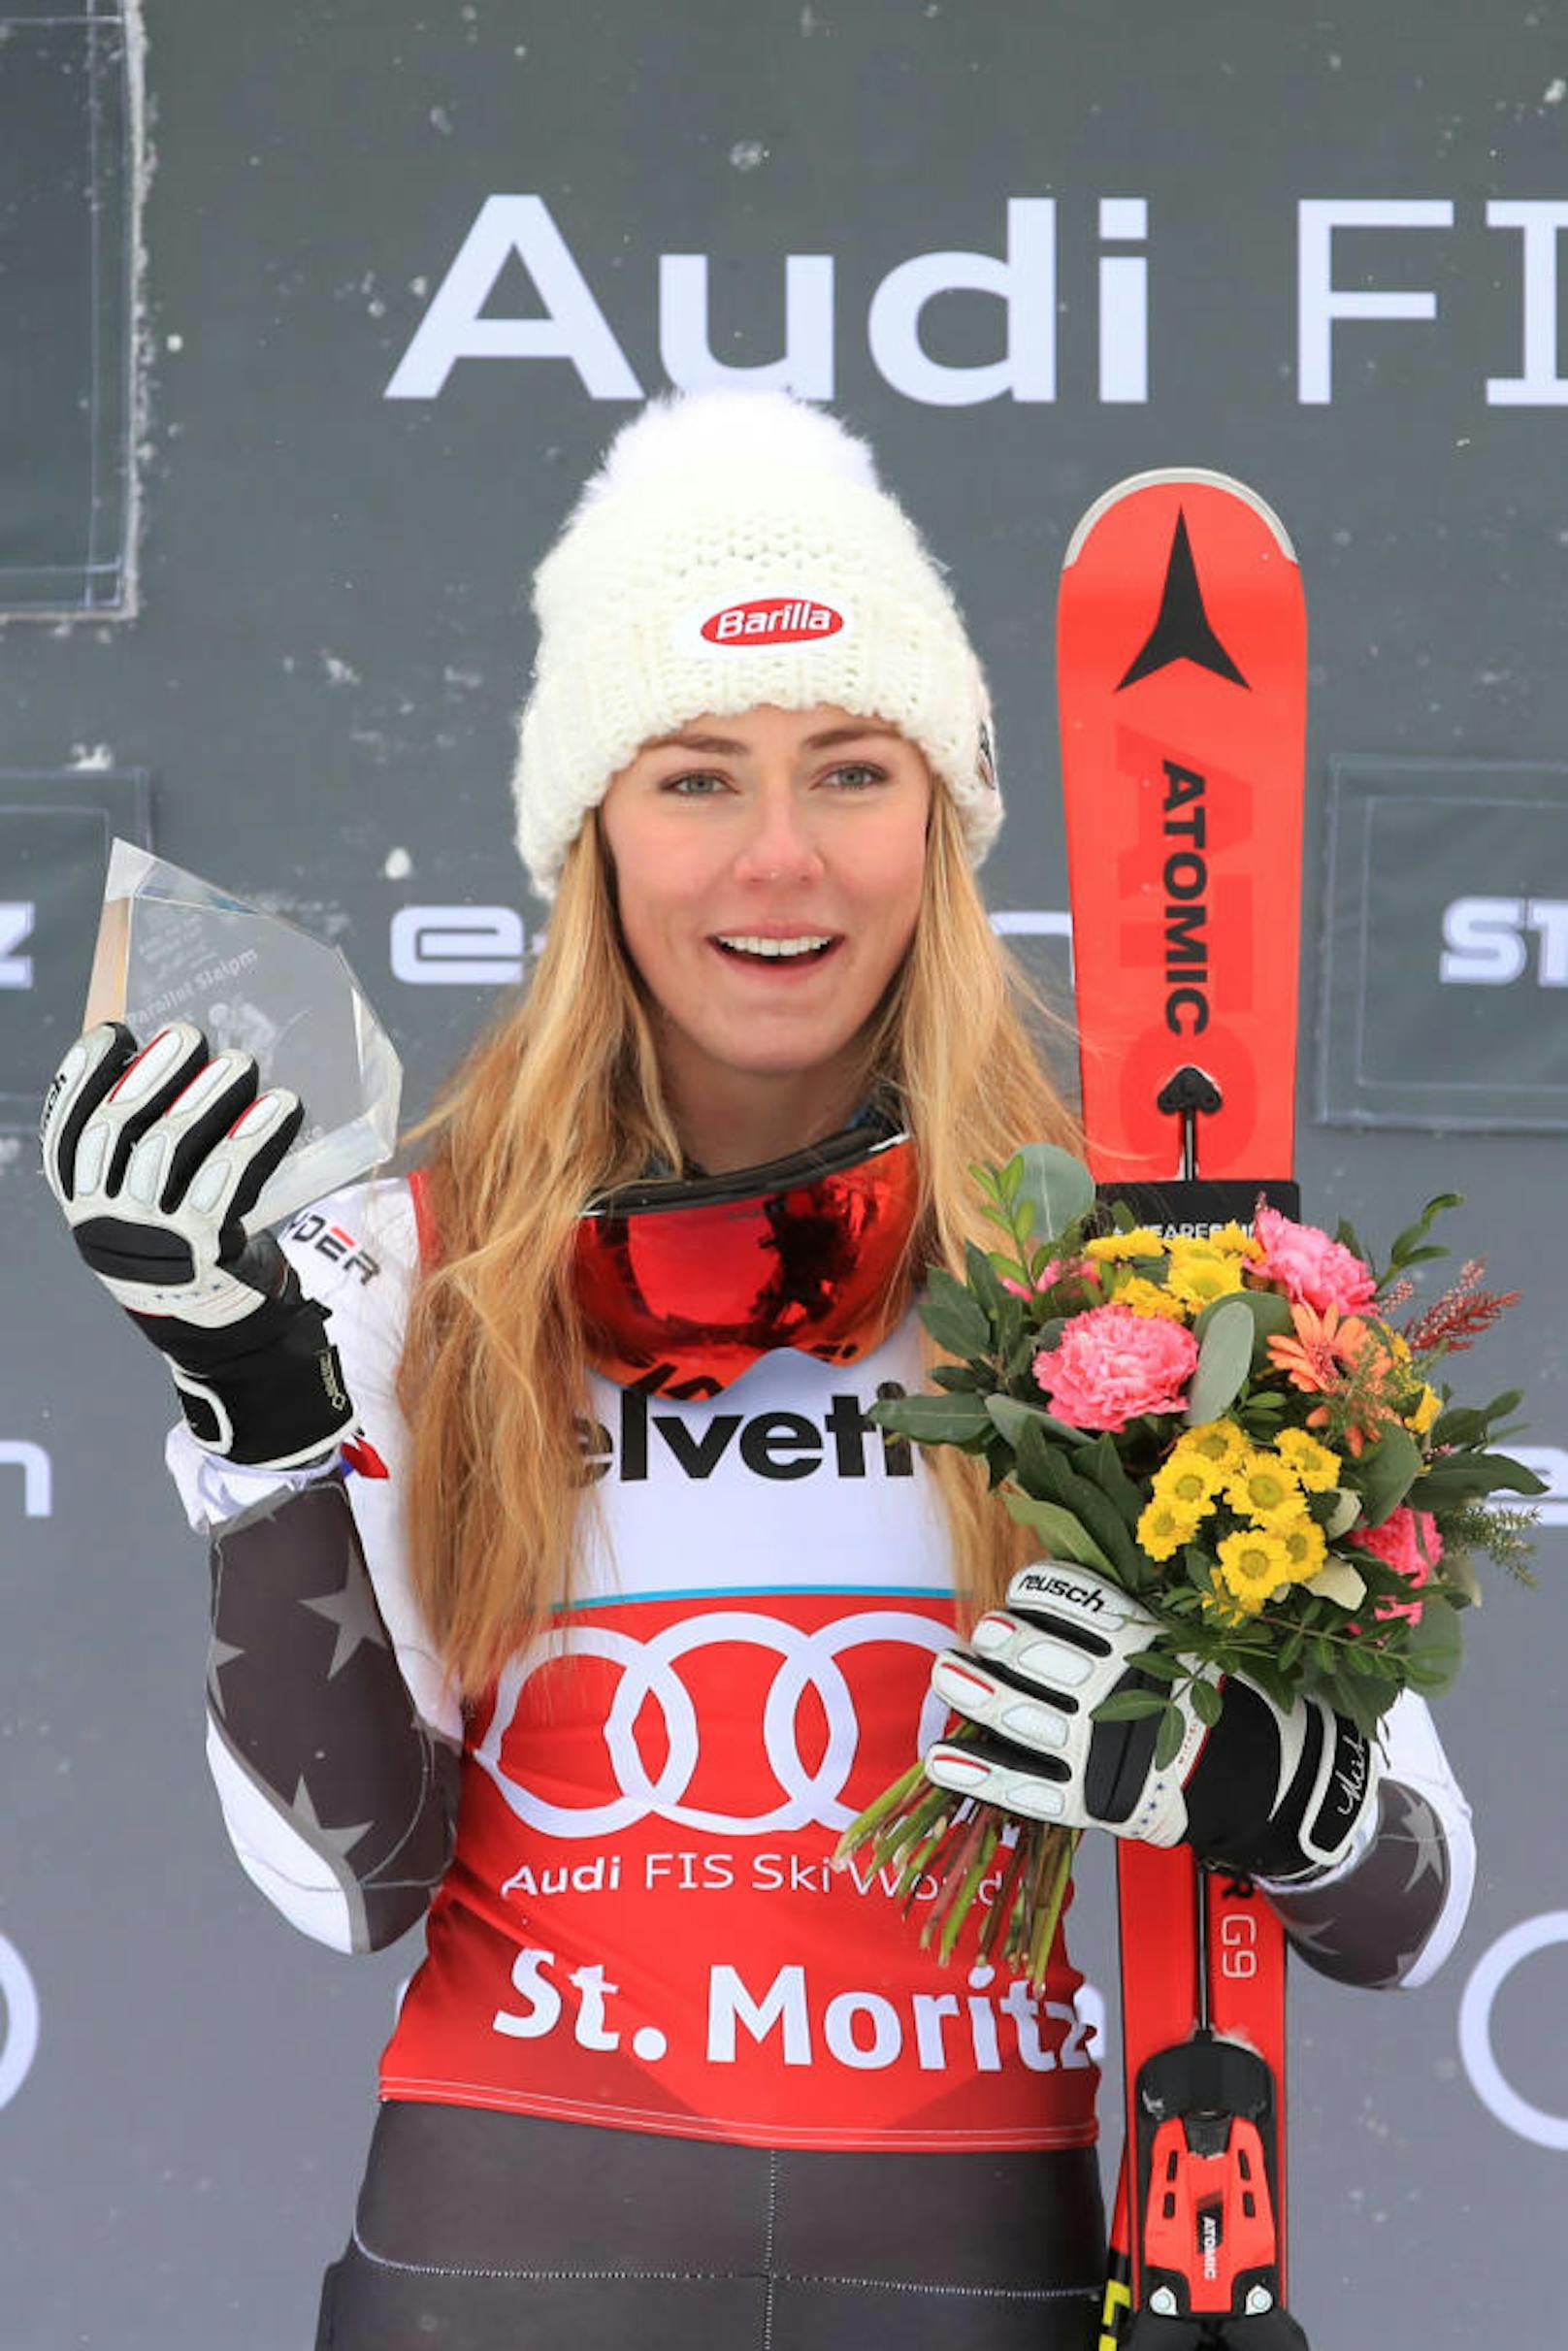 Shiffrin behielt ihre Mega-Form - und legte in St. Moritz gleich den nächsten Super-G-Erfolg nach. "Wenn es so läuft wie derzeit, liebe ich diesen Bewerb", jubelte sie. Aus ÖSV-Sicht verlief das Rennen nicht nach Wunsch. Nicole Schmidhofer belegte Platz neun. 

<b><i>Super-G, St. Moritz (8.12. 2018)</i></b>
1. Mikaela Shiffrin (US)
2. Lara Gut-Behrami (Sz)
3. Tina Weirather (Lie)
<b>9. Nicole Schmidhofer</b>